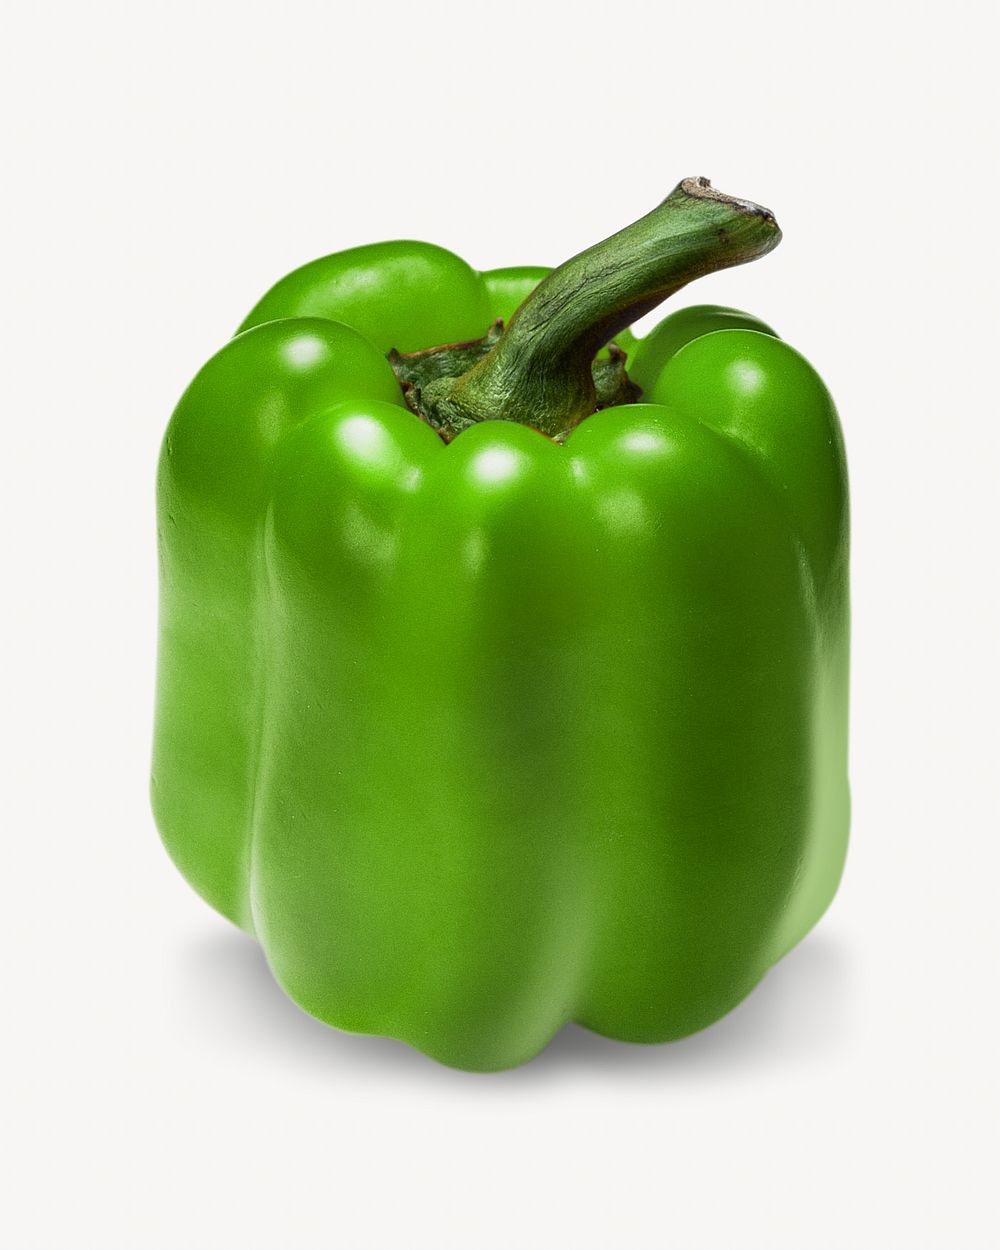 Bell pepper image on white